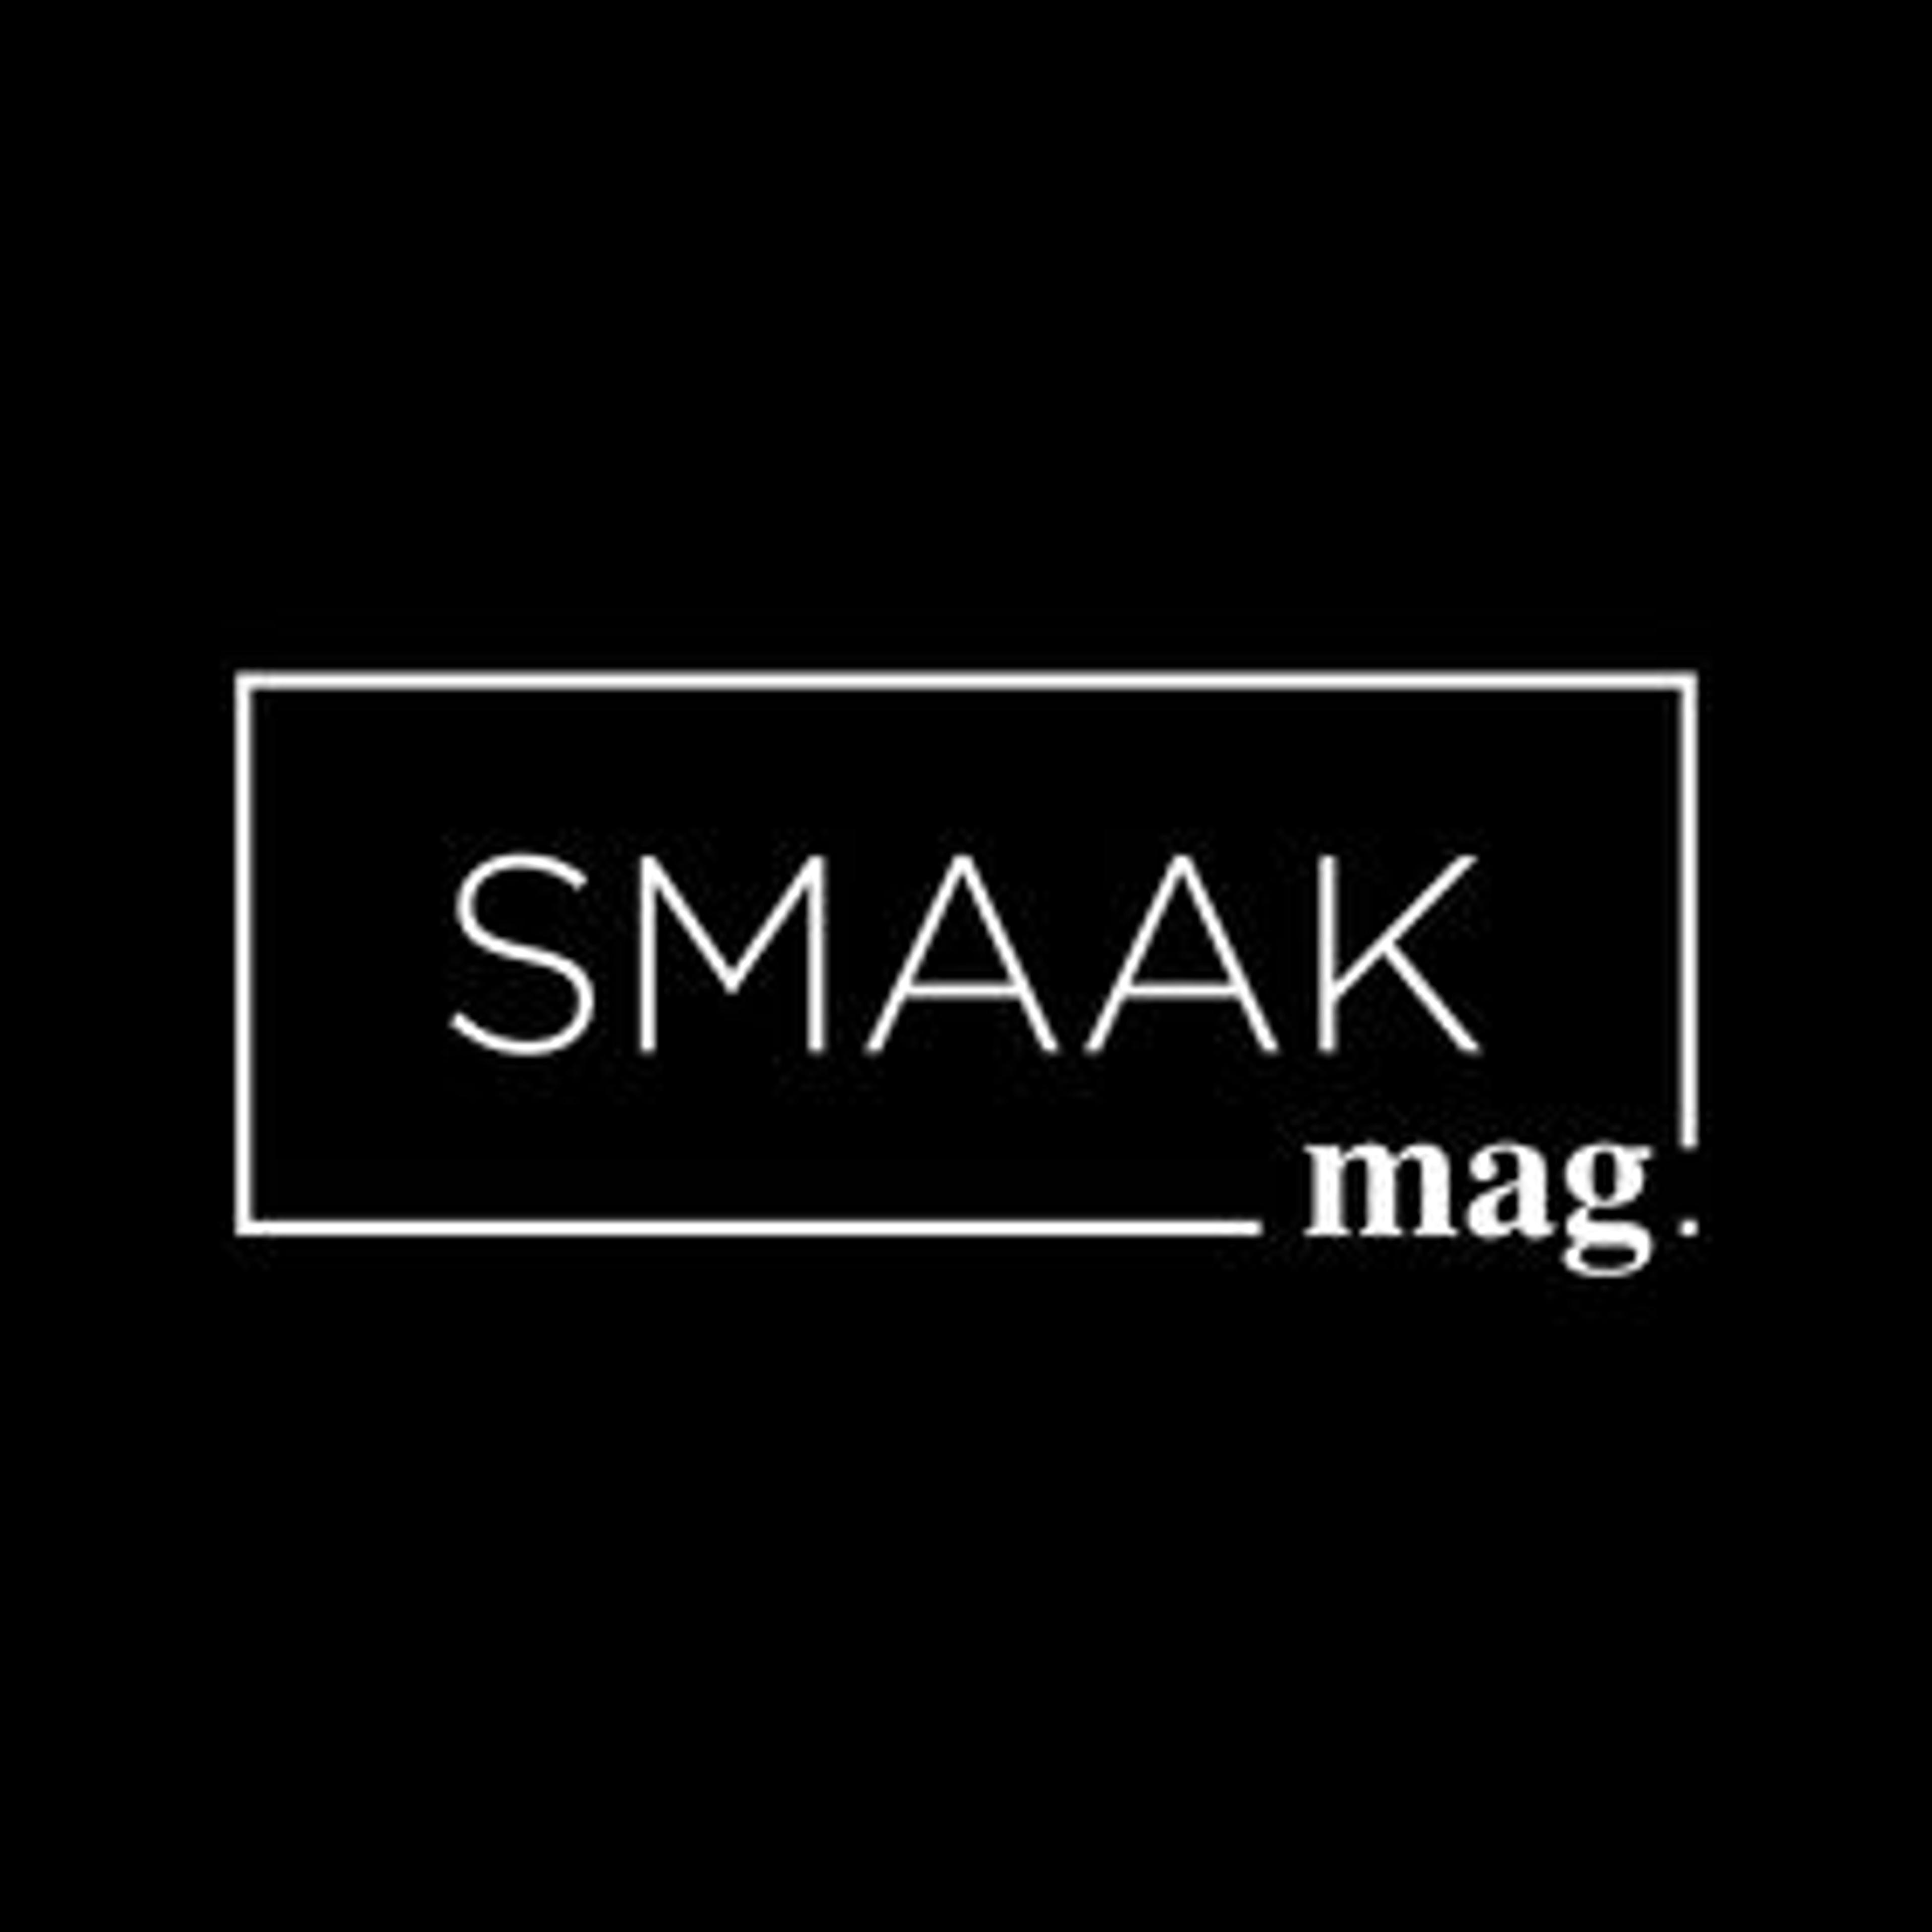 SMAAKmag. voor Rotterdam regio gelanceerd